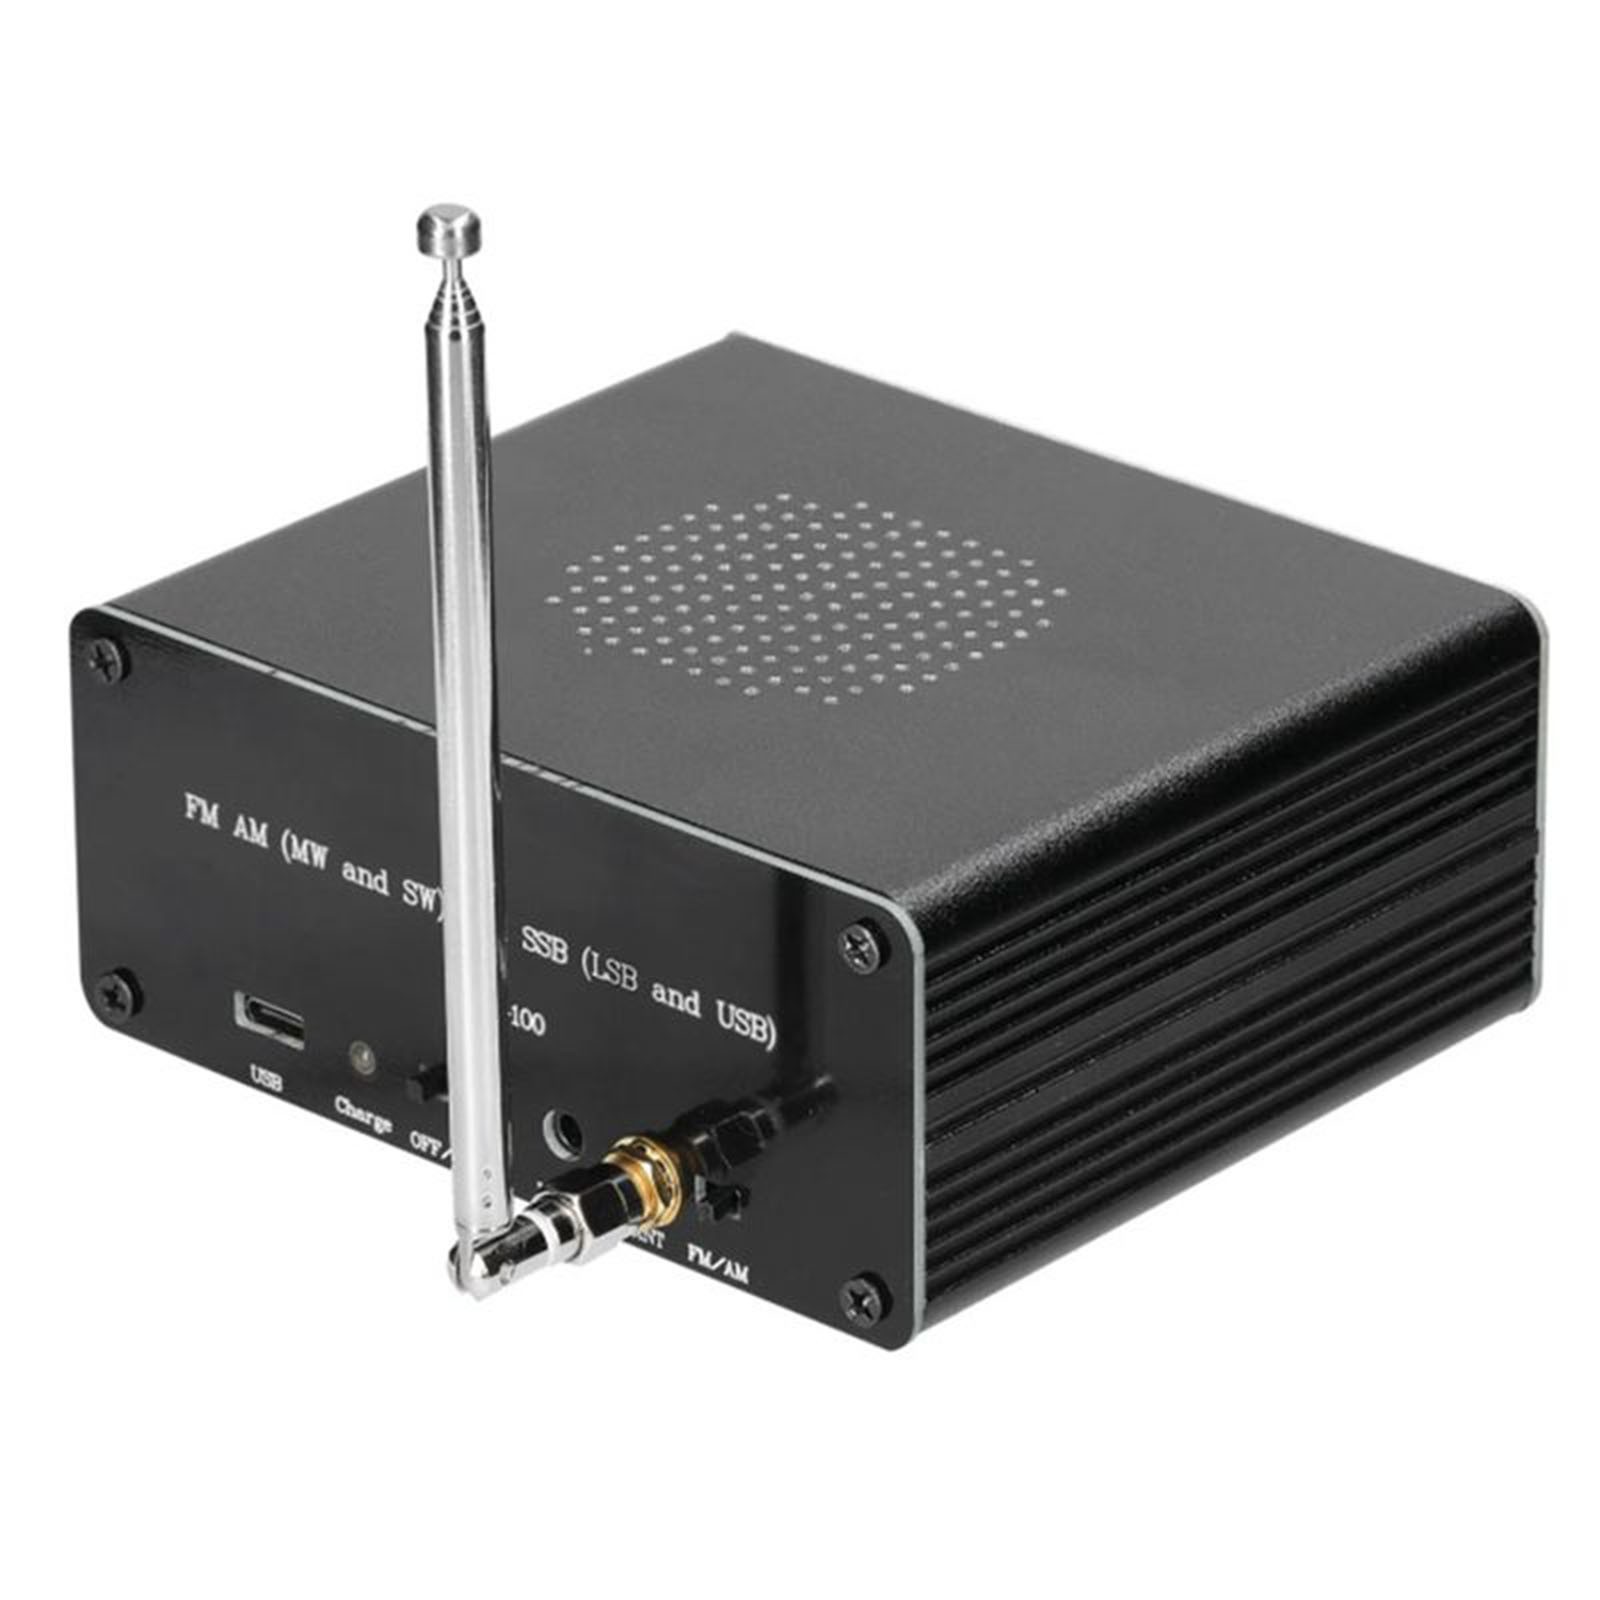 Geege ATS-100 SI4732/SI4735 Full Band Radio Receiver FM LW (MW & SW) SSB (LSB & USB) - image 2 of 9